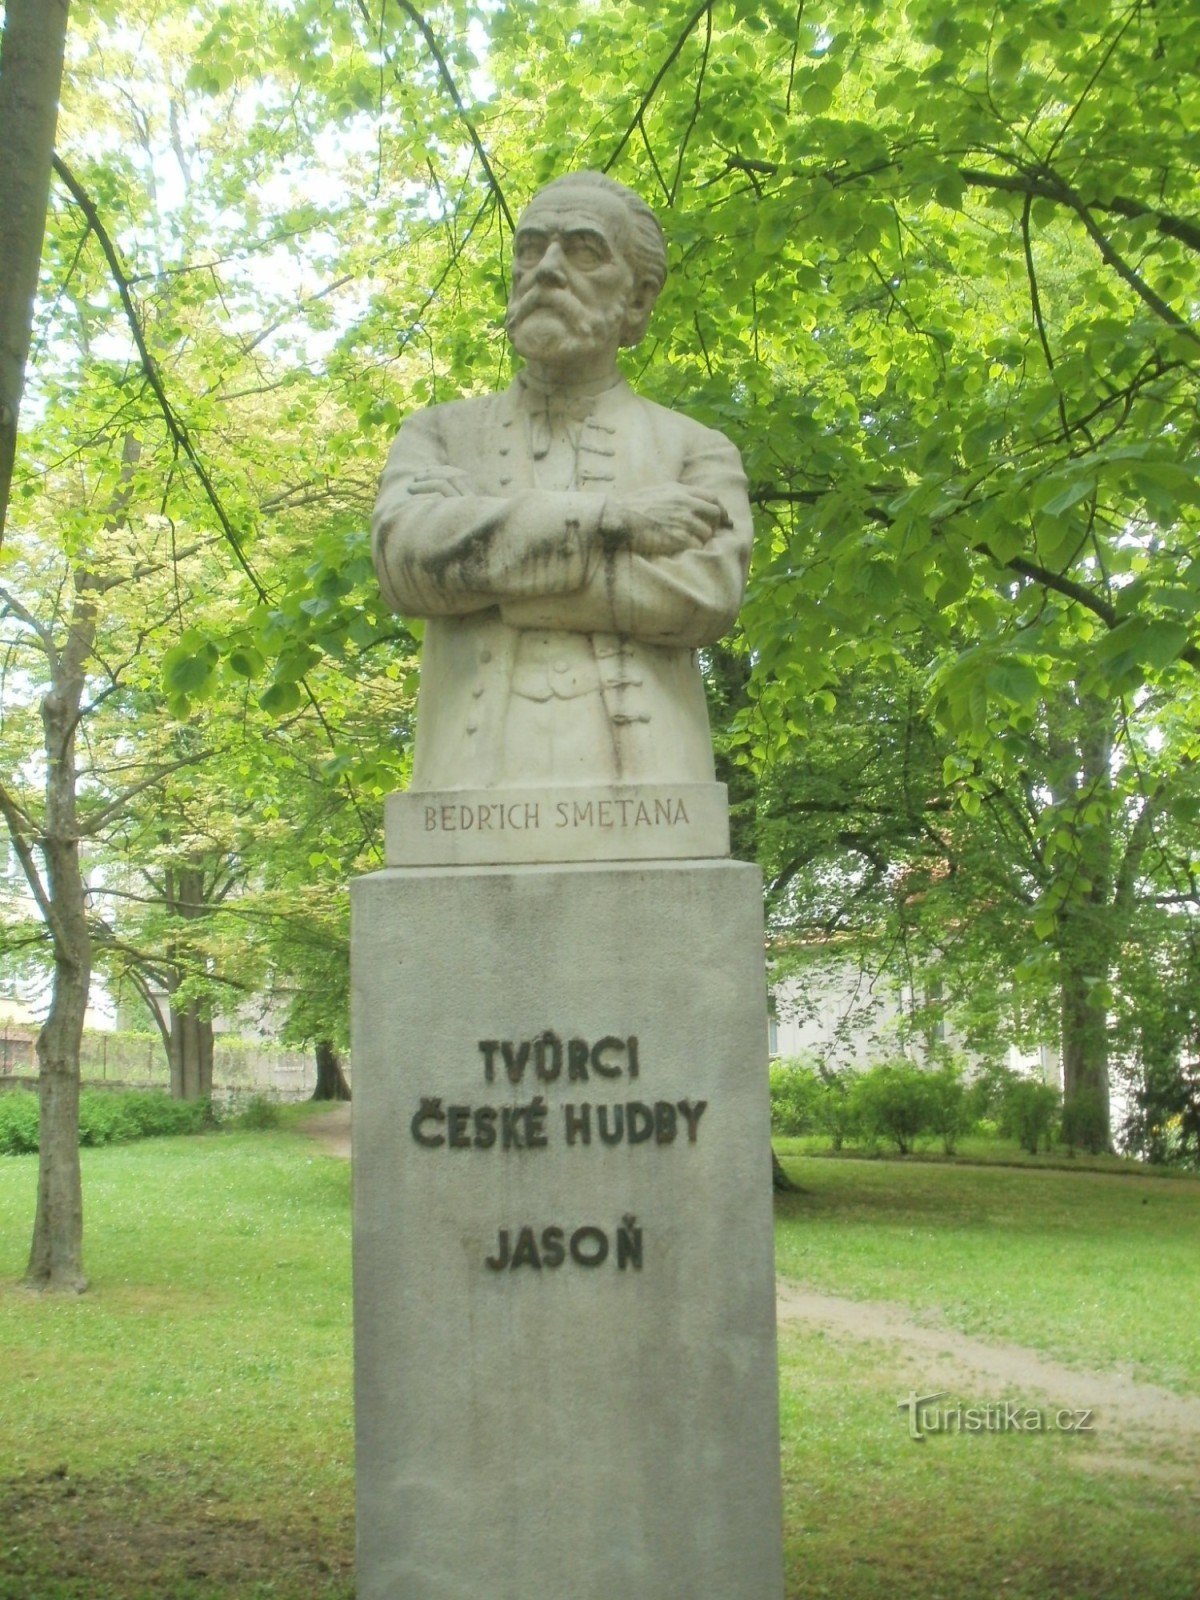 Havlíčkův Brod - monumento a Bedřich Smetana